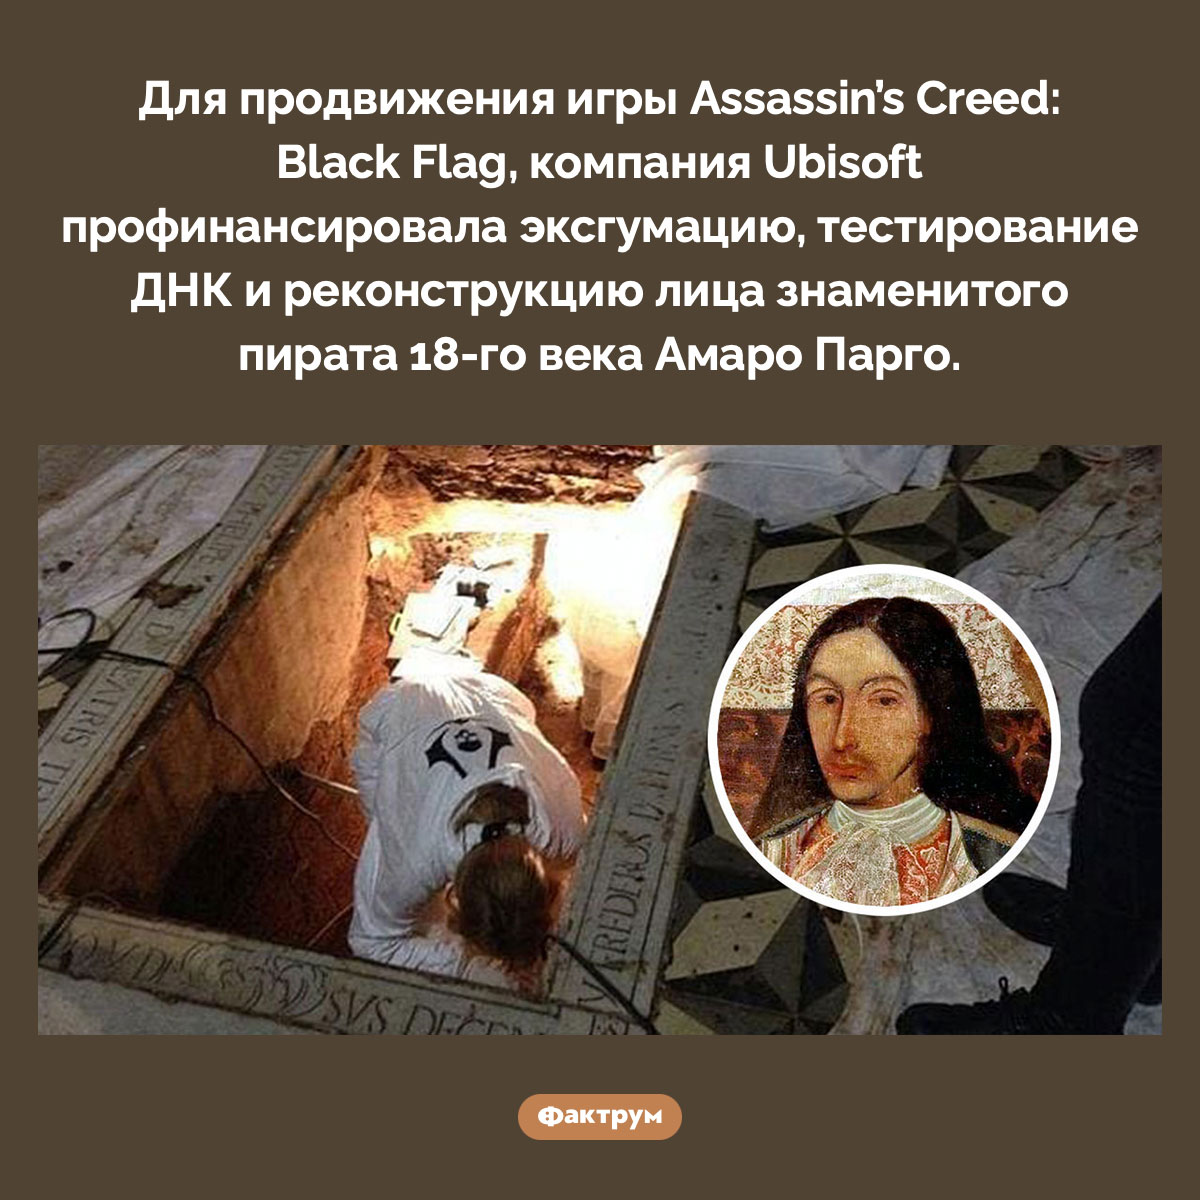 Для Assassin’s Creed: Black Flag Ubisoft достали из-под земли пирата 18-го века. Для продвижения игры Assassin’s Creed: Black Flag, компания Ubisoft профинансировала эксгумацию, тестирование ДНК и реконструкцию лица знаменитого пирата 18-го века Амаро Парго.